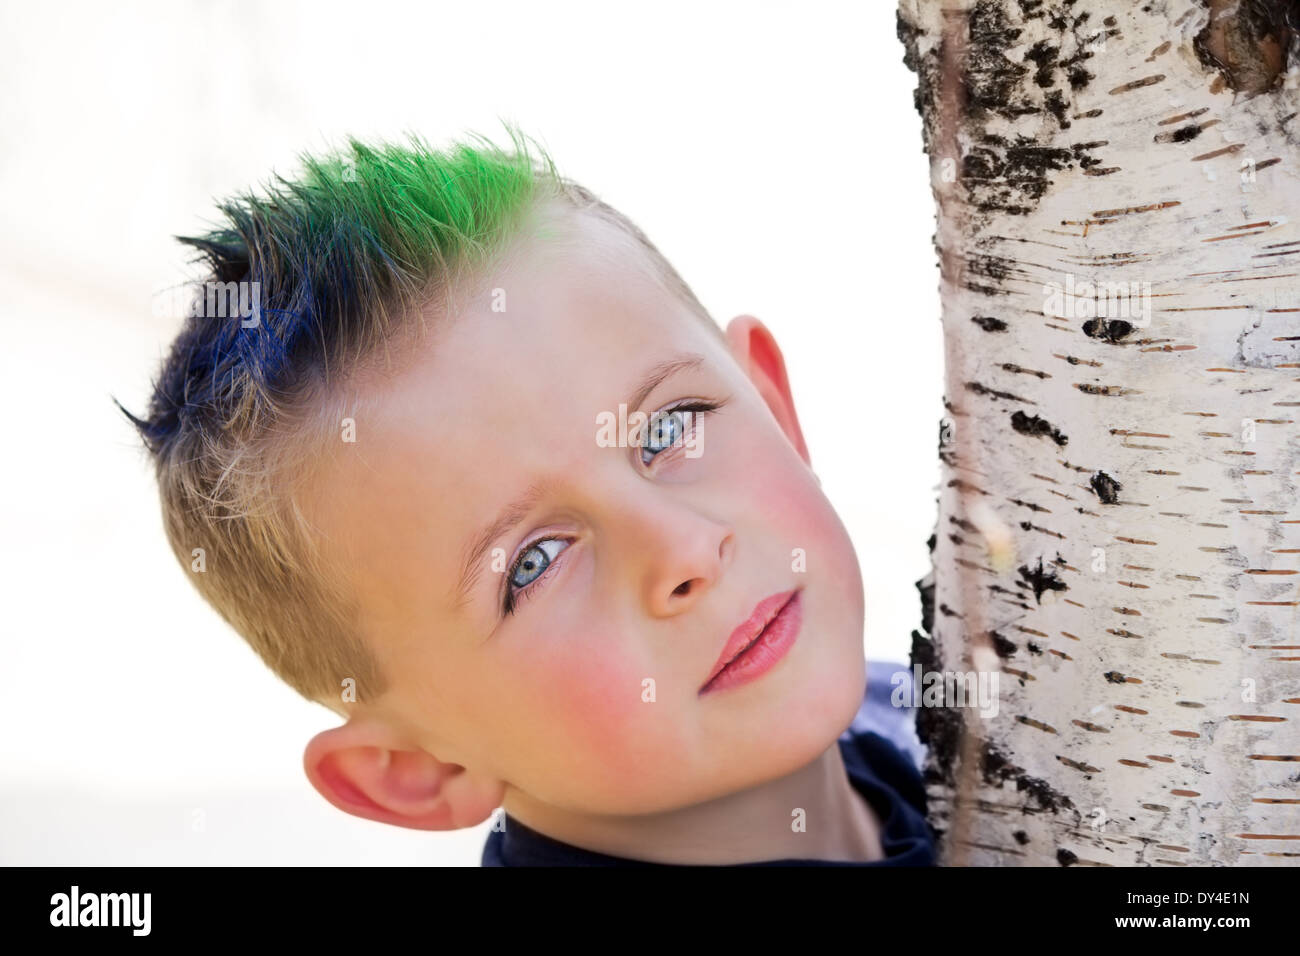 Kleiner Junge mit blauen und grünen spikey Haar Birke Baumstamm umarmen Stockfoto